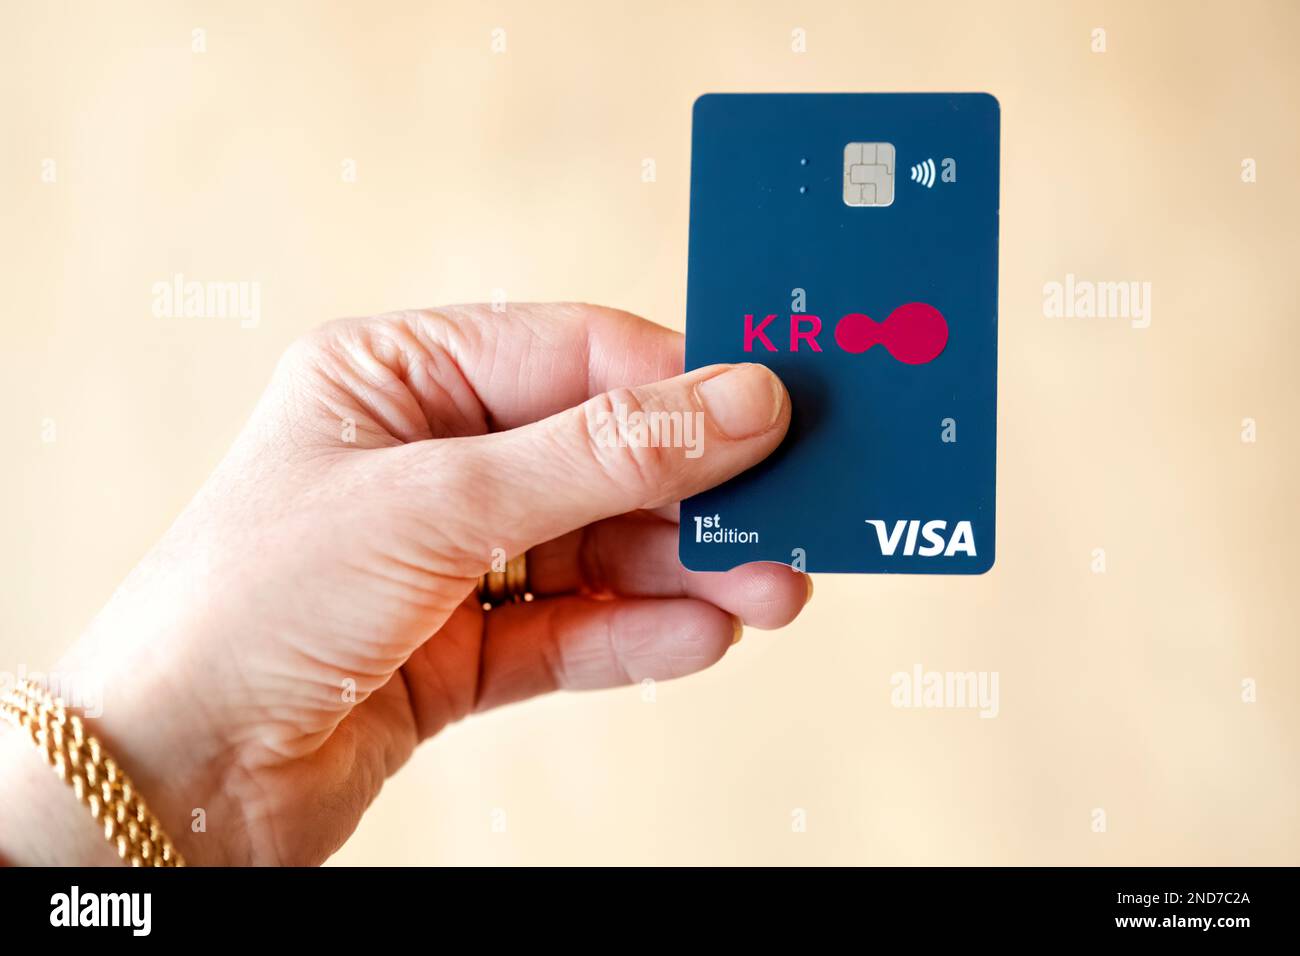 Eine Visakarte der Kroo Bank, die von einem Kunden gehalten wird. KROO ist eine digitale Challenger-Bank mit Sitz in Großbritannien, die einen bargeldlosen Service mit hohem Zinssatz betreibt. Stockfoto